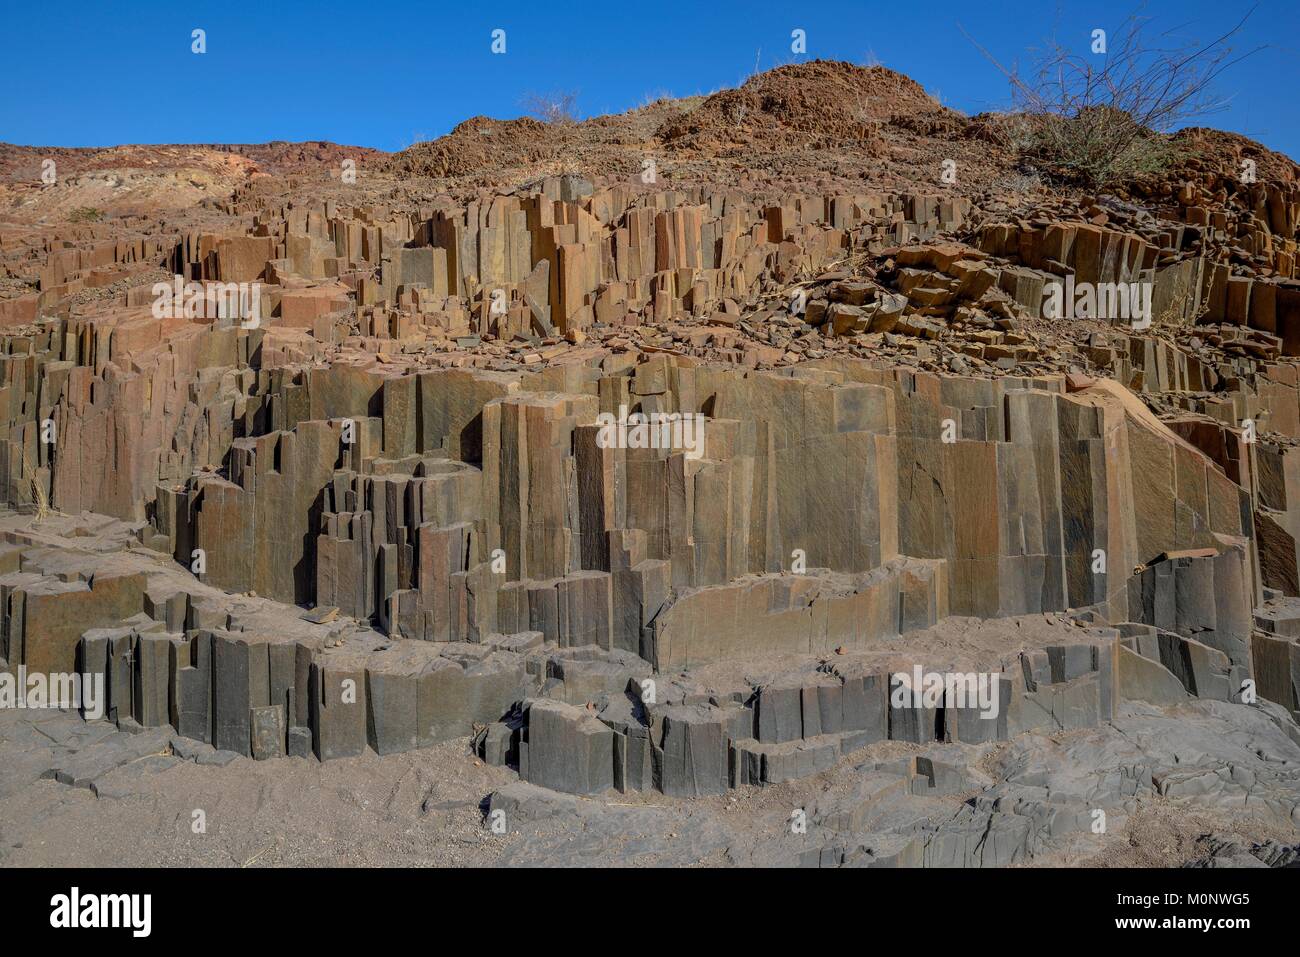 Colonne di basalto,organo a canne in basalto,nei pressi di Twyfelfontein,regione Kunene,Namibia Foto Stock